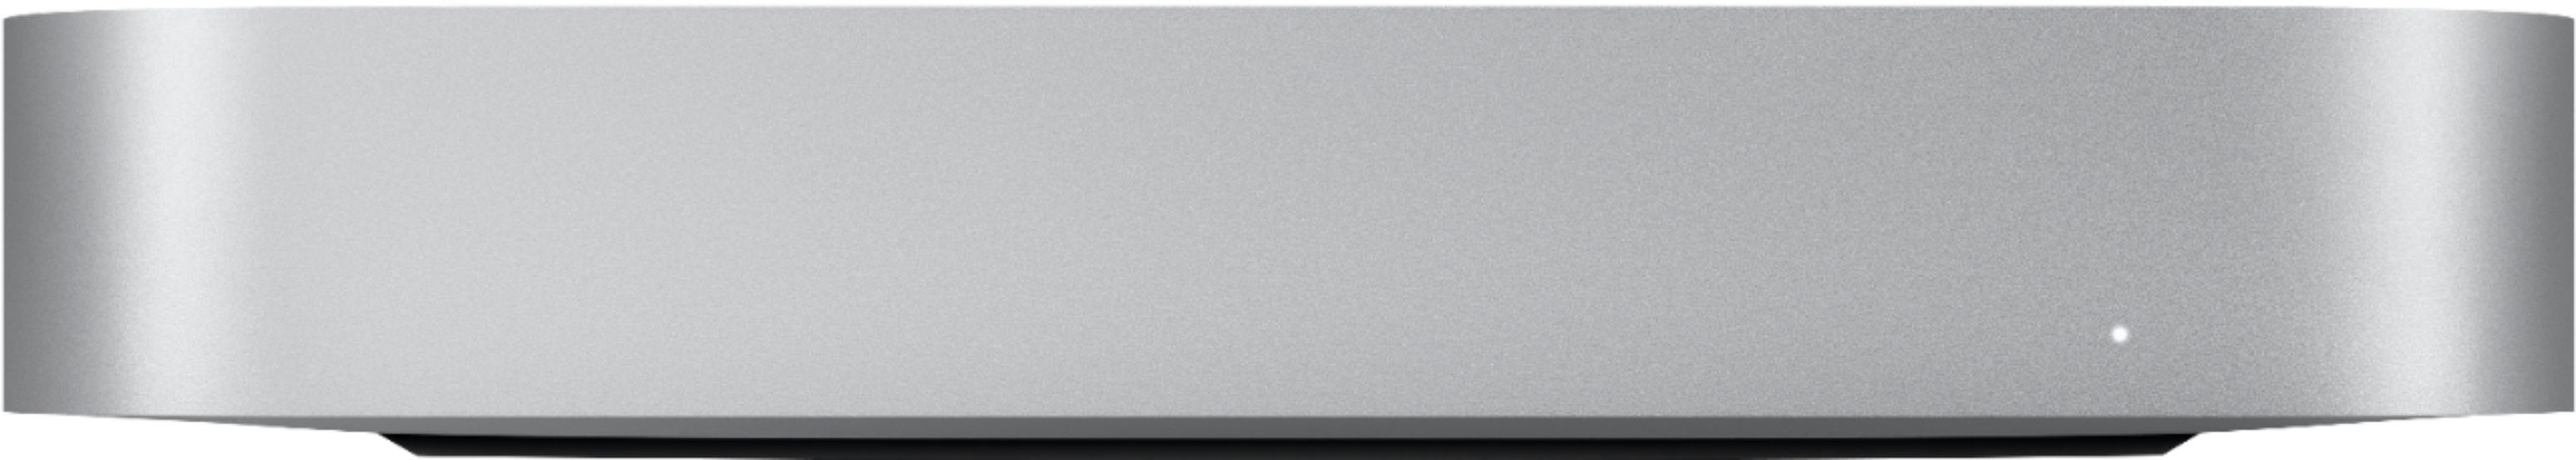 PC/タブレット デスクトップ型PC Mac mini Desktop Apple M1 chip 8GB Memory 256GB SSD Silver MGNR3LL 